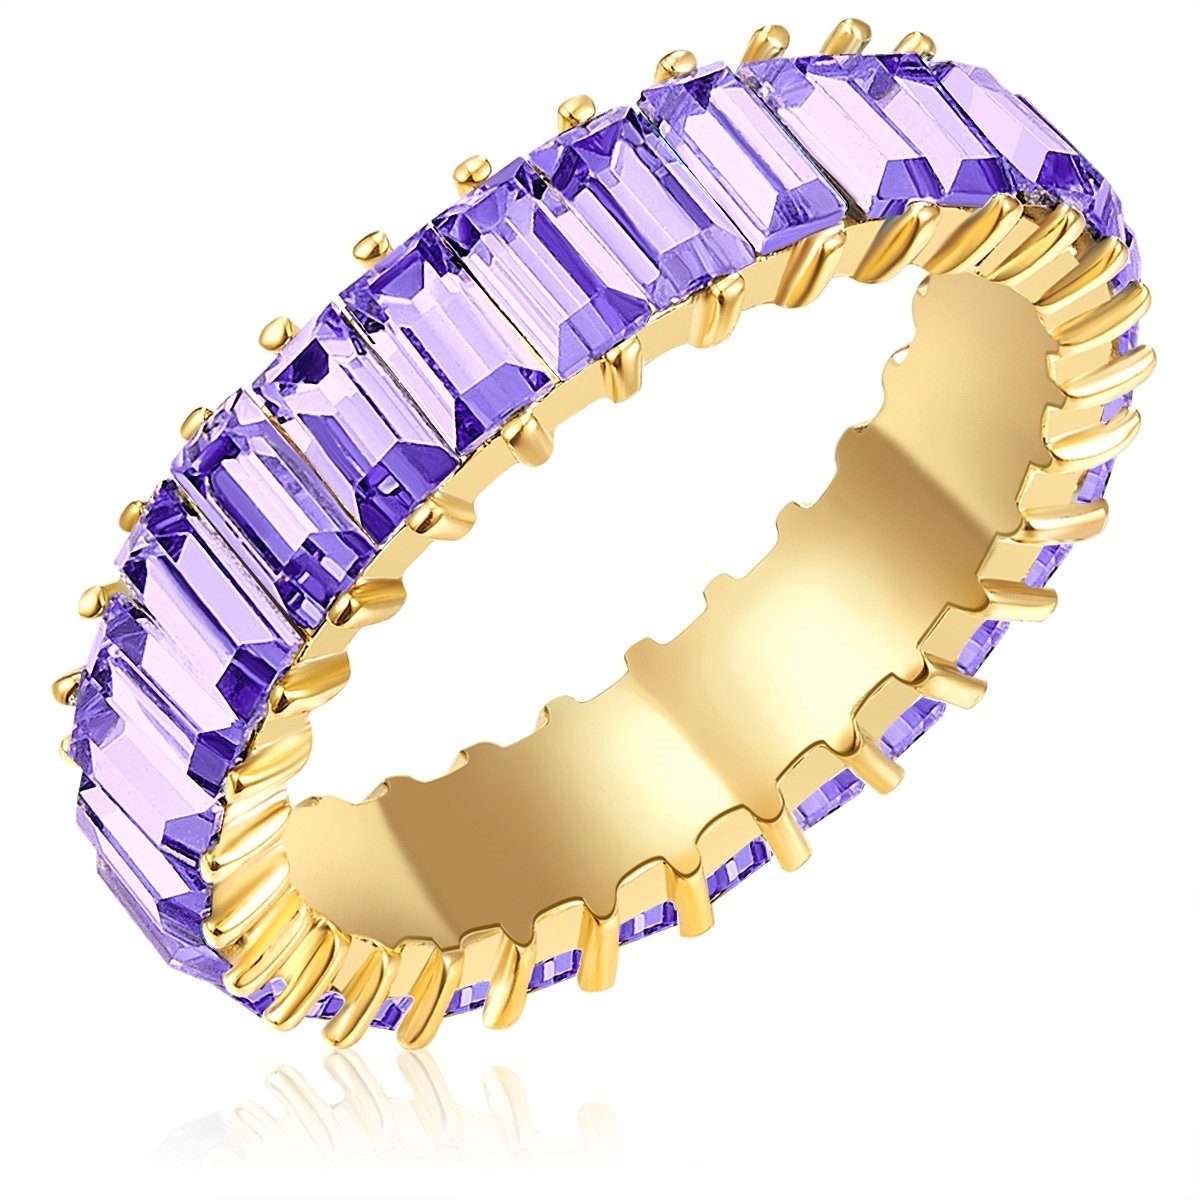 Ring Yokoamii gelbgold, Fingerring violett Kristall gelbgold